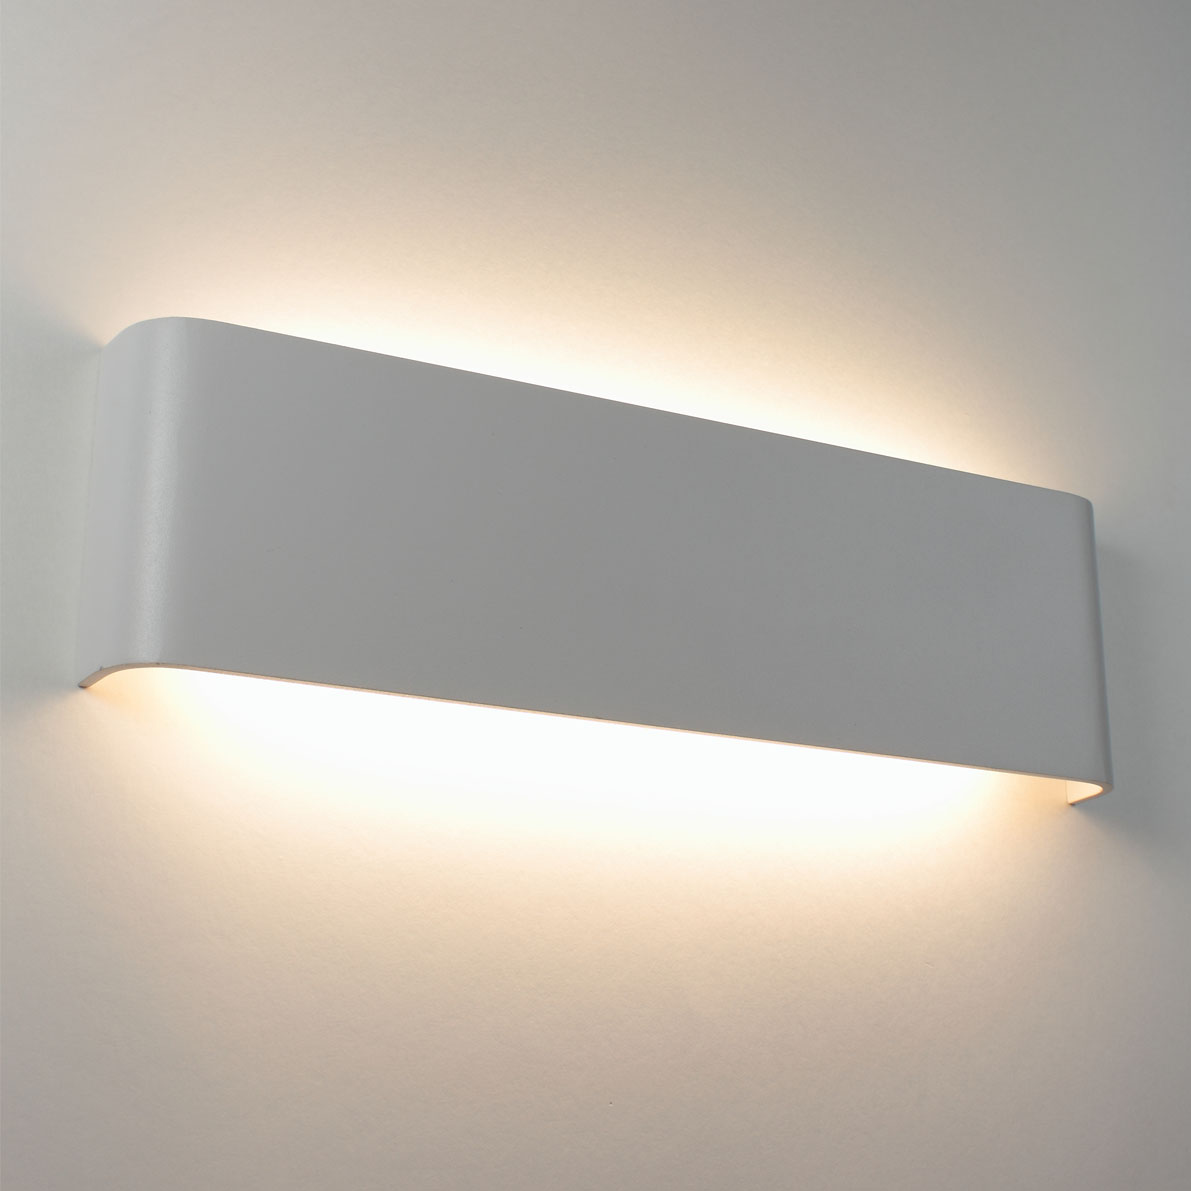 Светодиодные светильники Светильник настенный светодиодный JH-BD-B02 DHL22 (220V, 12W, белый корпус, warm white)